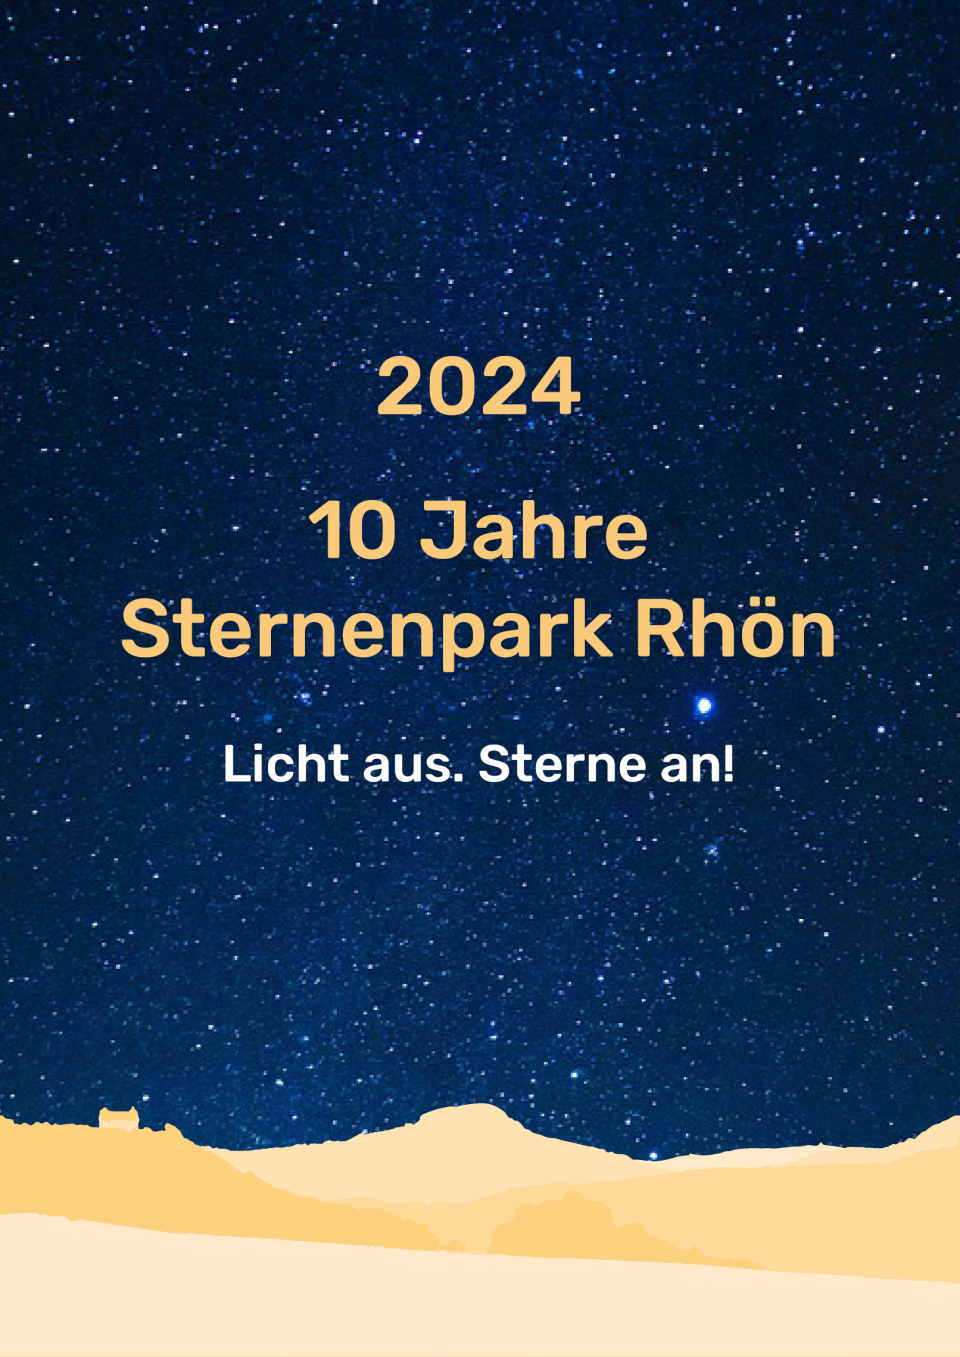 10 Jahre Sternenpark Rhön